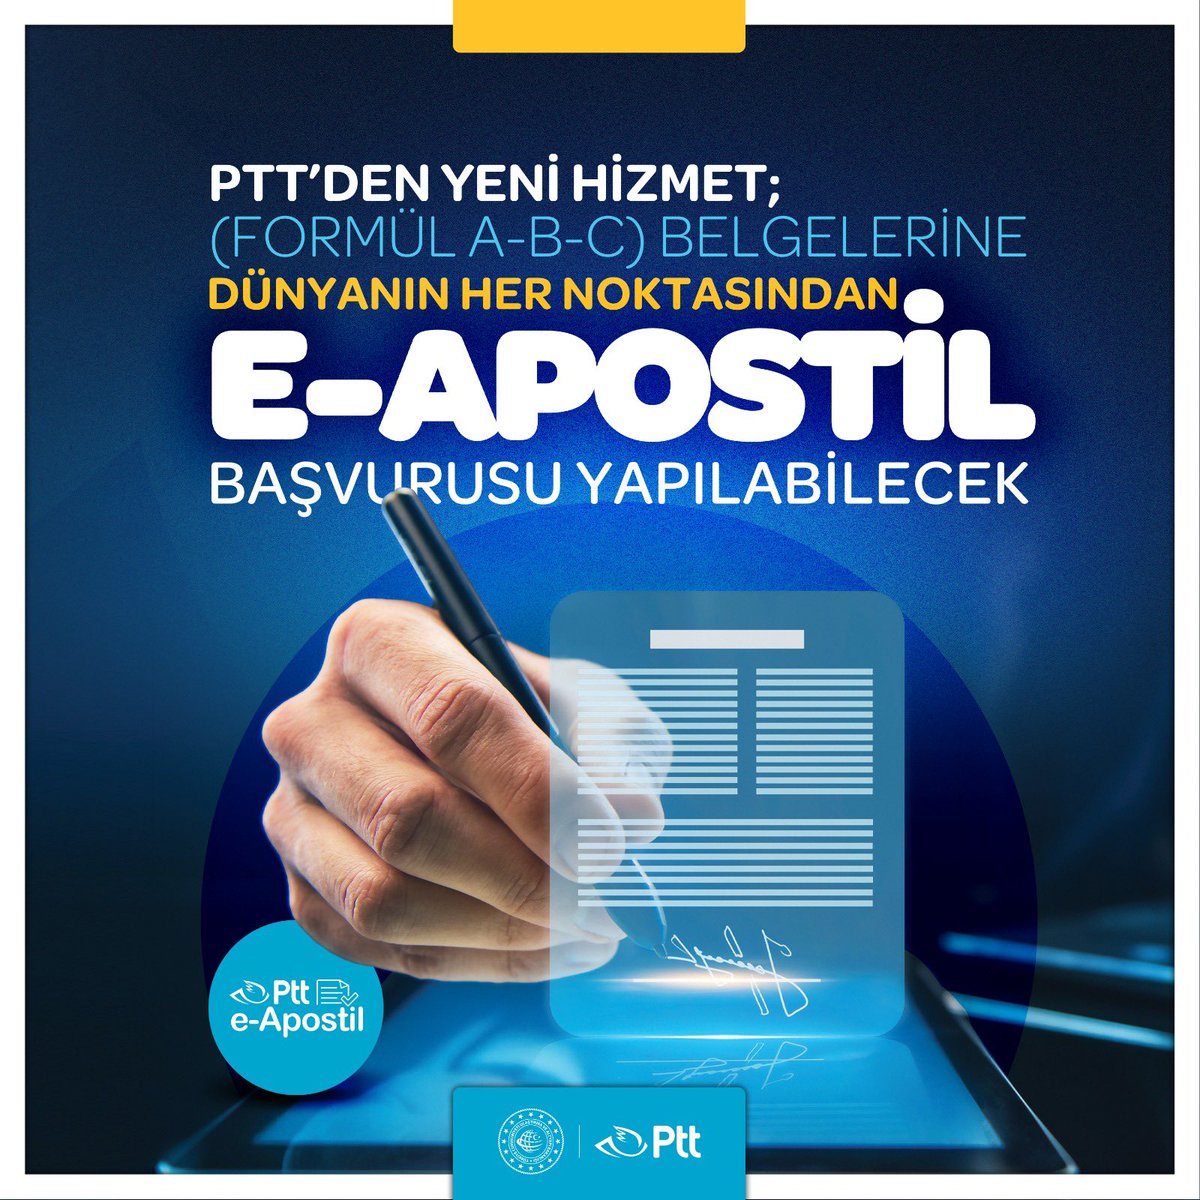 120’den fazla ülkede e-Apostil hizmetimizle yanınızdayız! PTT'nin e-Apostil hizmeti ile resmî belgelerinizi onaylayın, 120’den fazla ülkede yasal olarak kullanım kolaylığına hızlıca erişin. Detaylı bilgi almak için; ➡️ eapostil.gov.tr